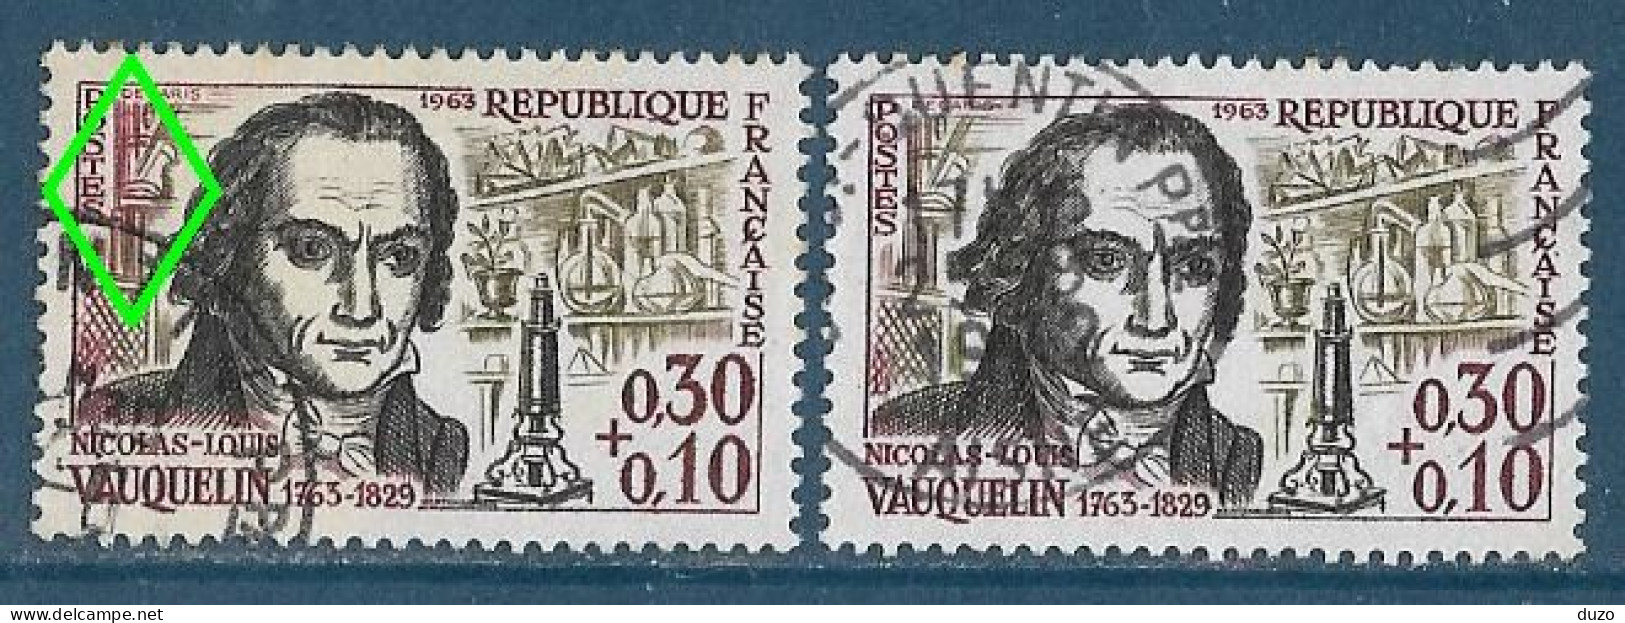 France 1963 - Variété - Y&T N° 1373 Vauquelin (oblit) - 1 Exemplaire Fond De Gauche En Rouge + 1 Normal Brun Olive. - Usados